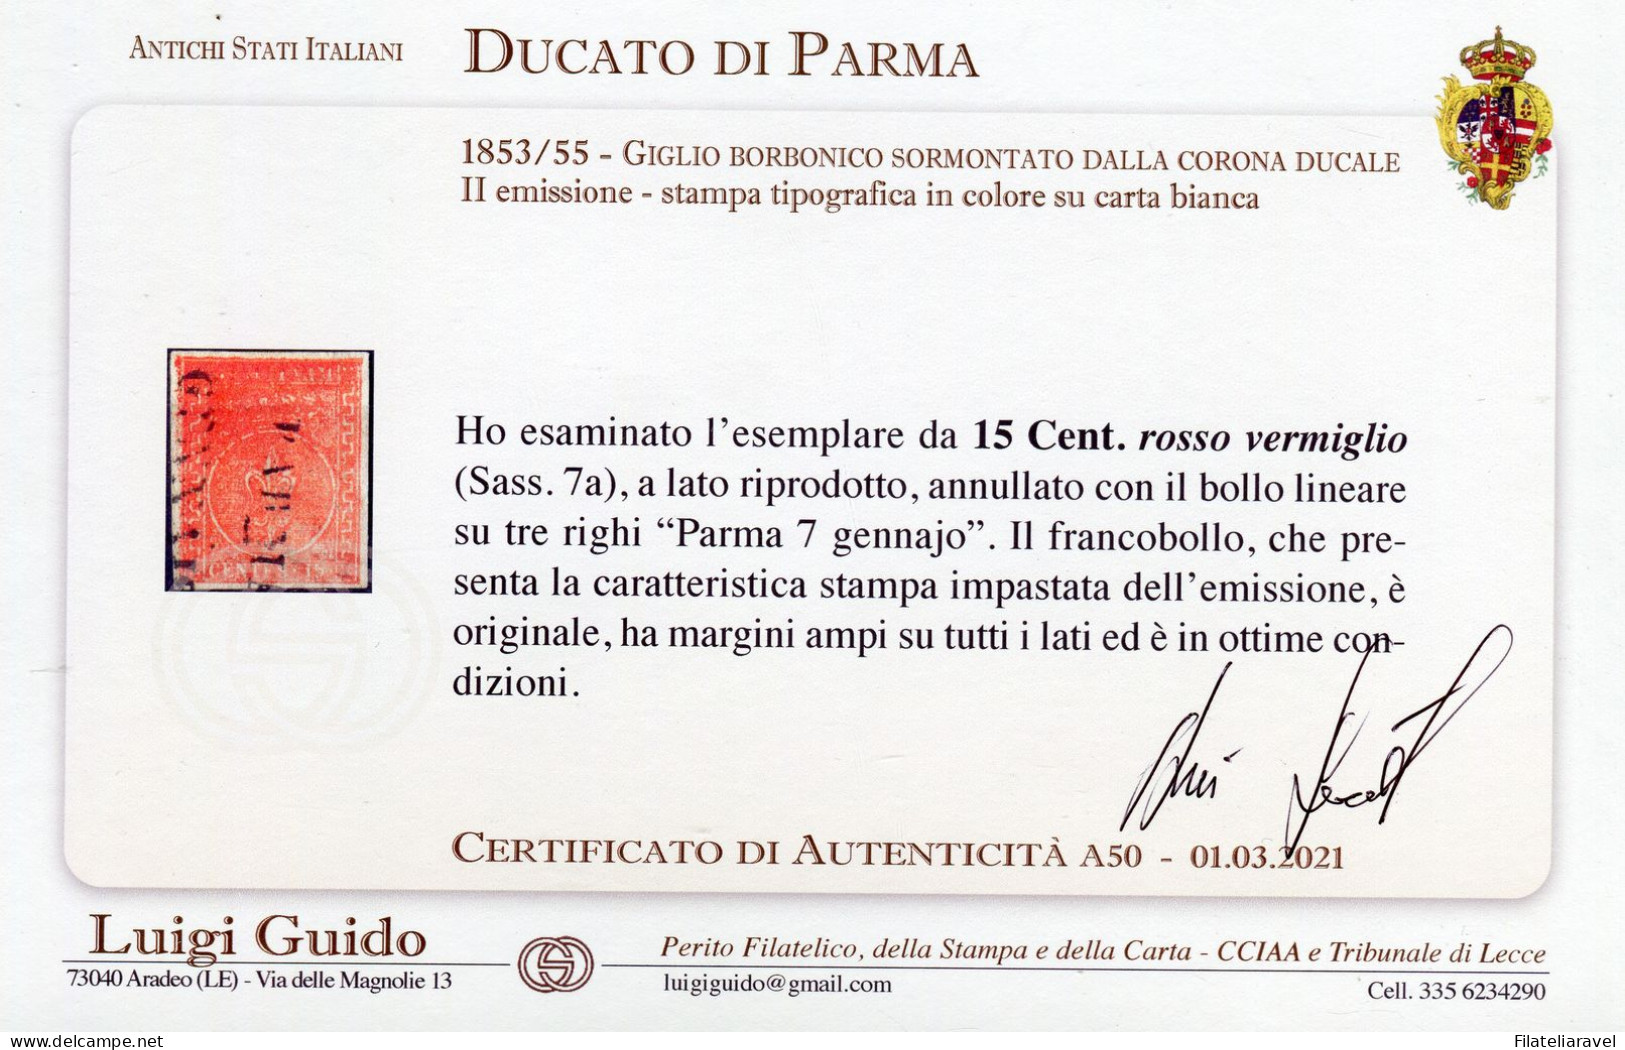 Us 1853/55 Parma - 15 Centesimi Rosso Vermiglio Stampa Impastata (7a) Ottime Condizioni, Diena & Cert. L. Guido - Parme